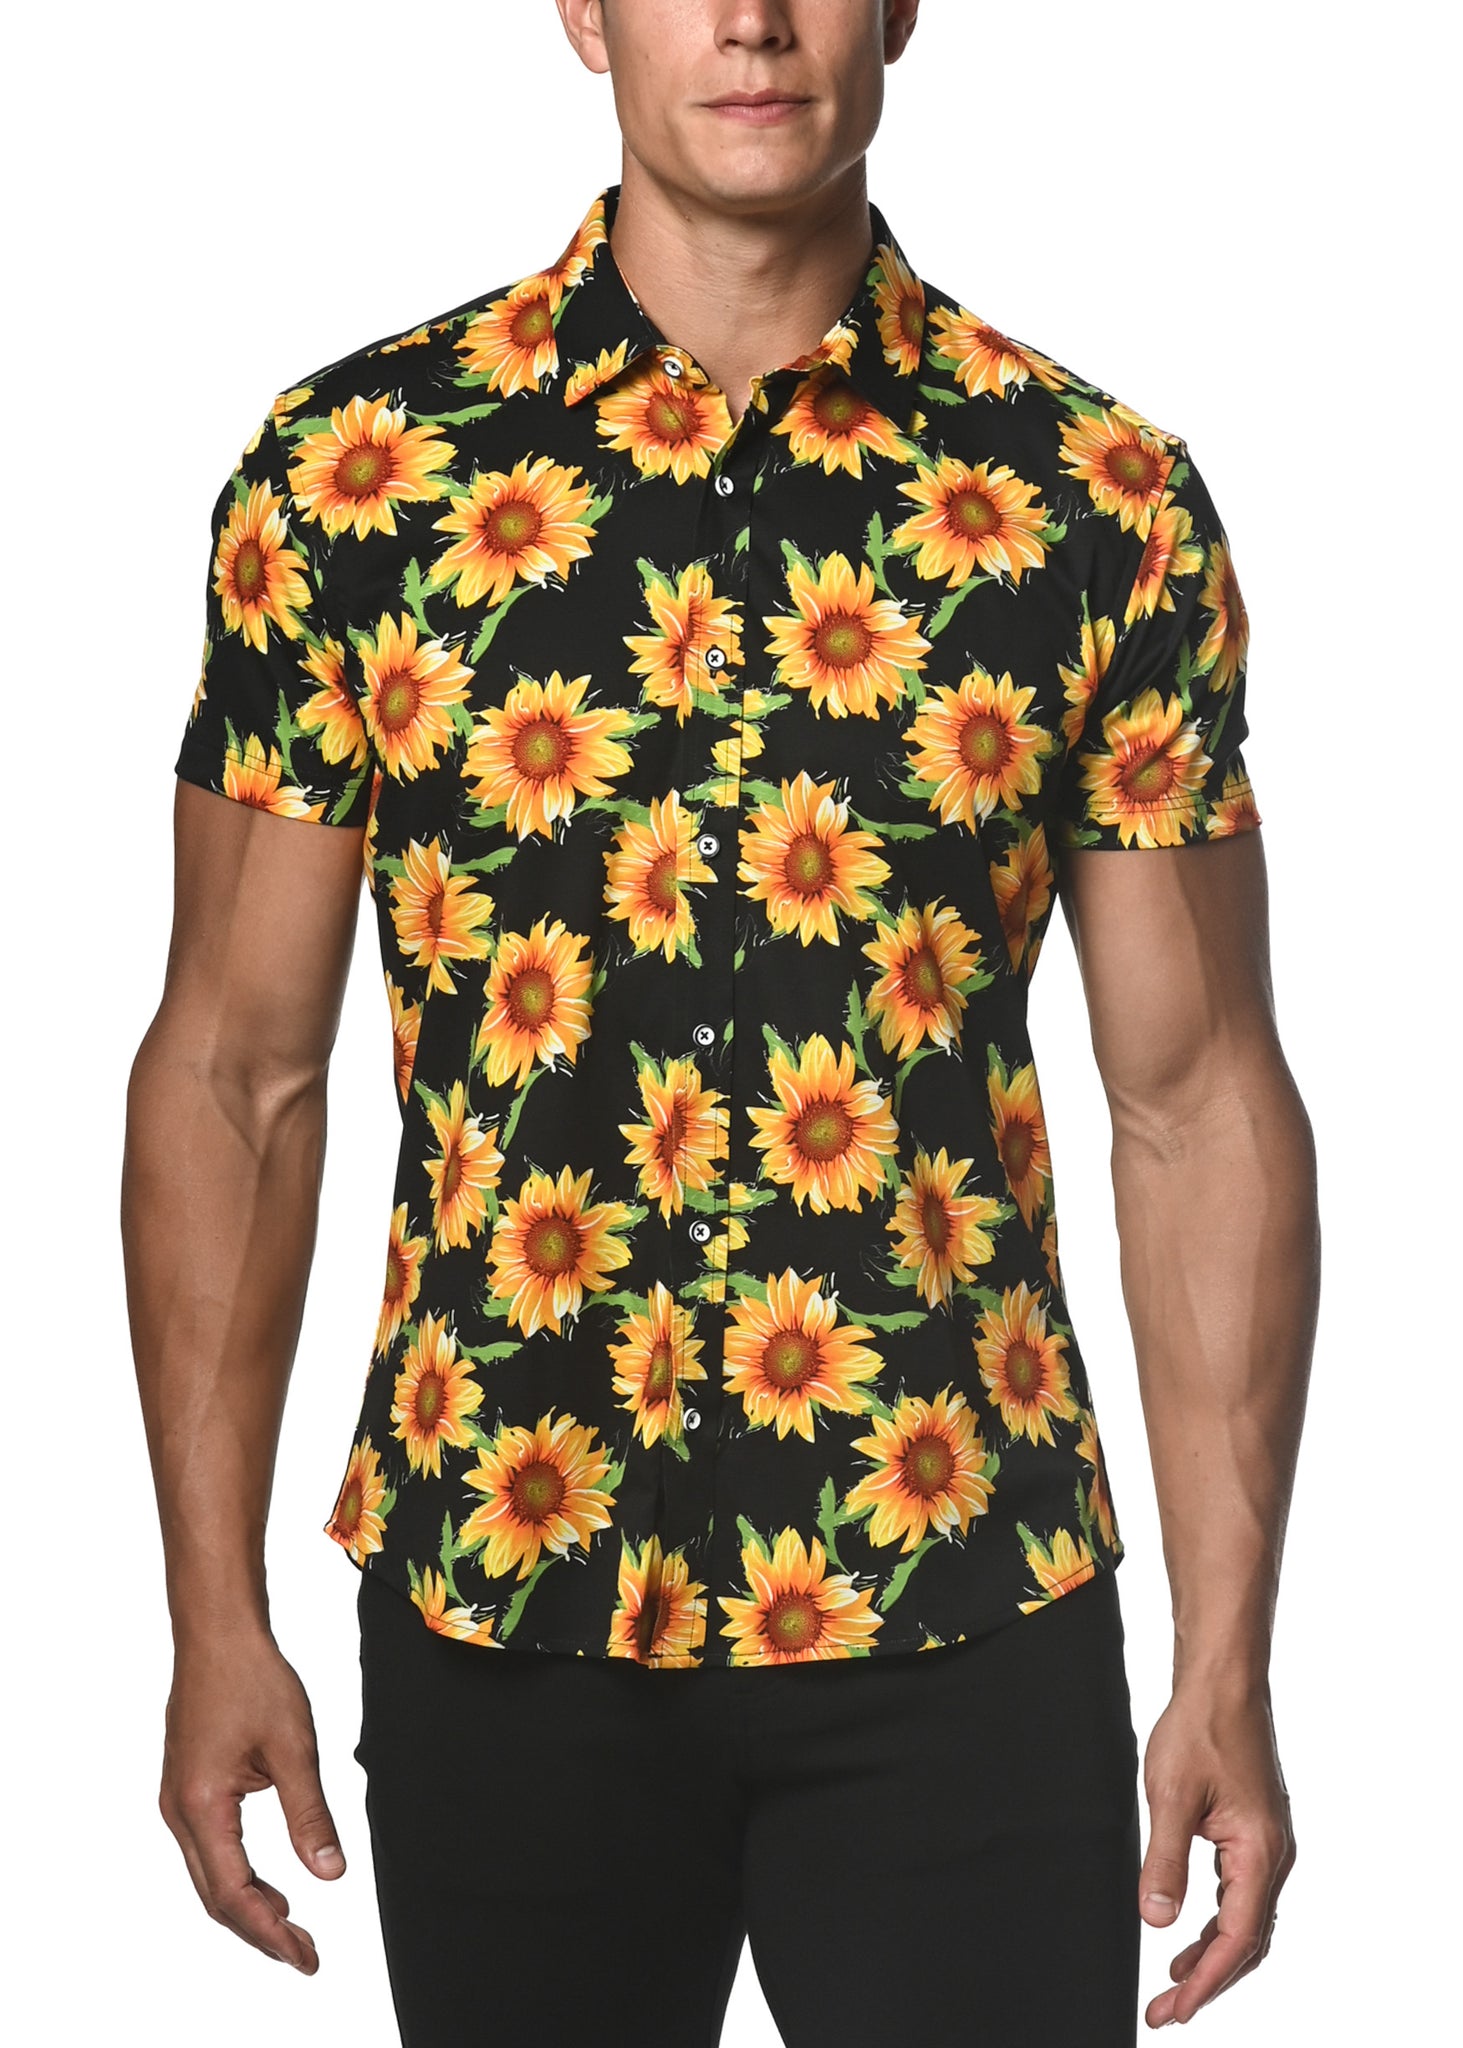 Stretch Jersey Knit Shirt - Sunflowers Yellow/Black